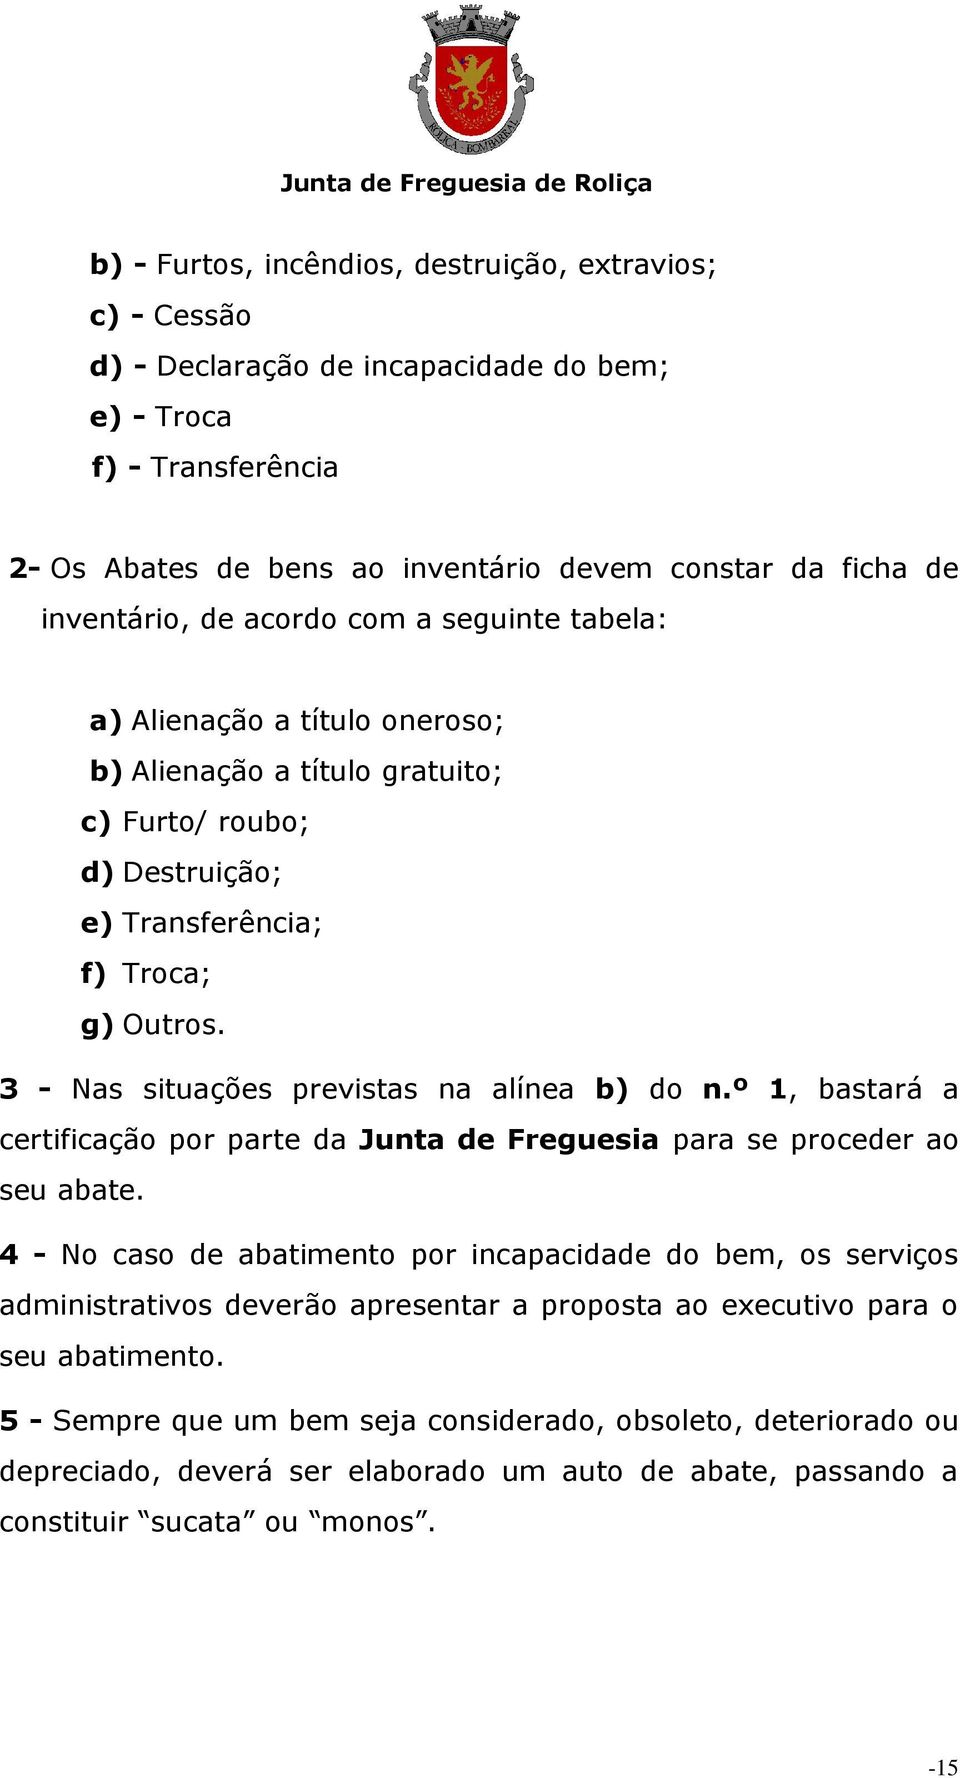 3 - Nas situações previstas na alínea b) do n.º 1, bastará a certificação por parte da Junta de Freguesia para se proceder ao seu abate.